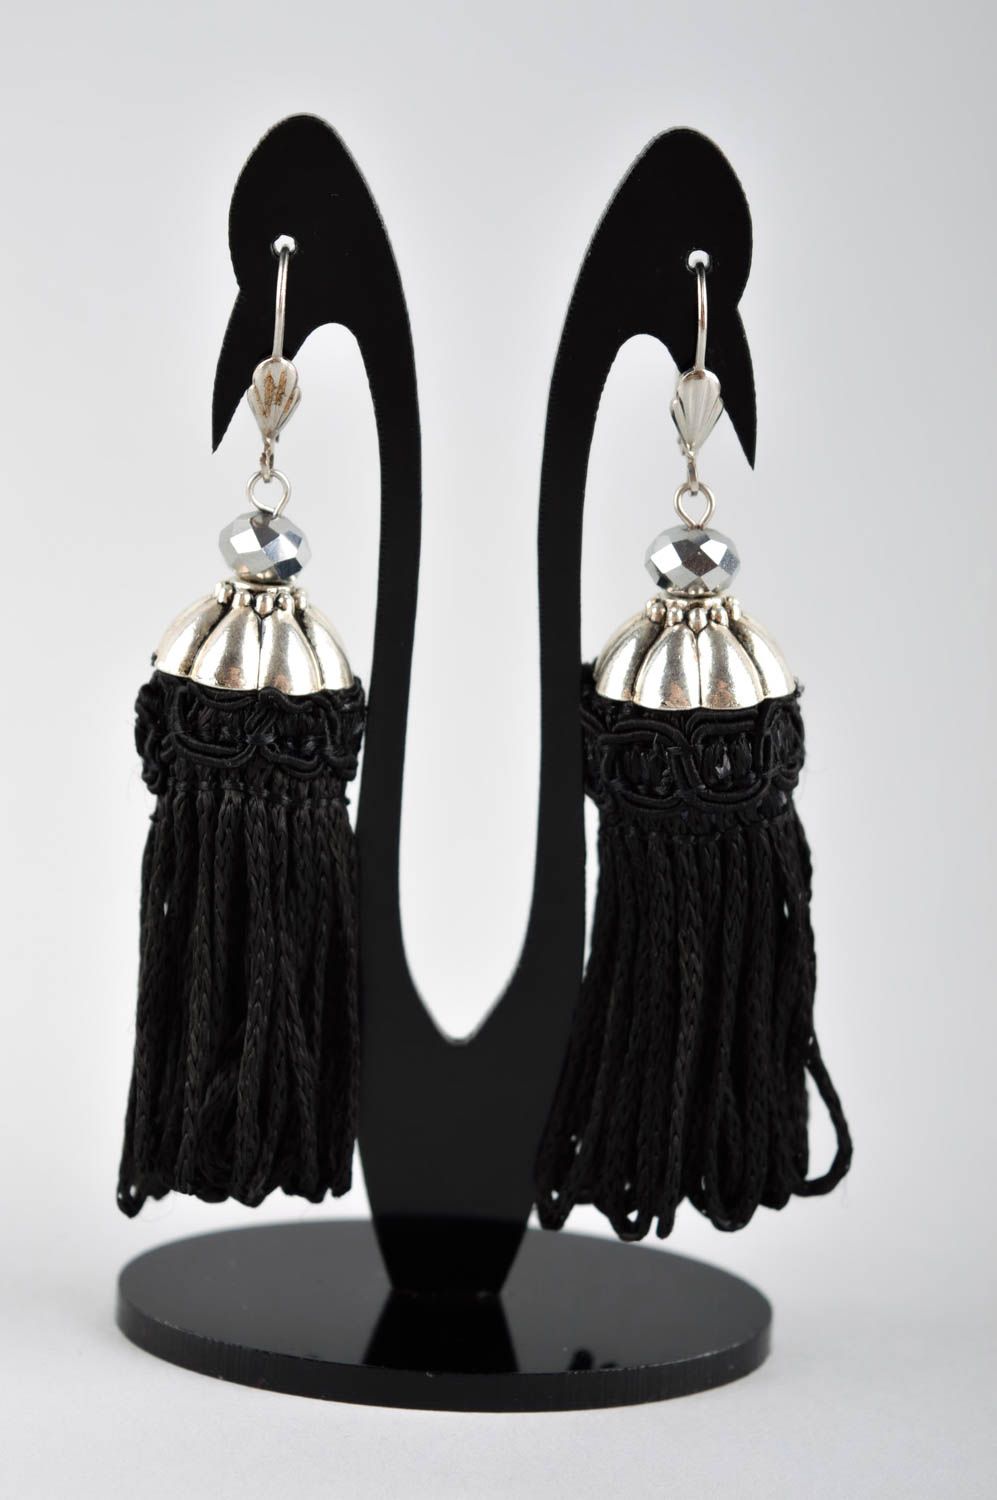 Handmade jewelry tassel earrings designer accessories long earrings gift for her photo 2